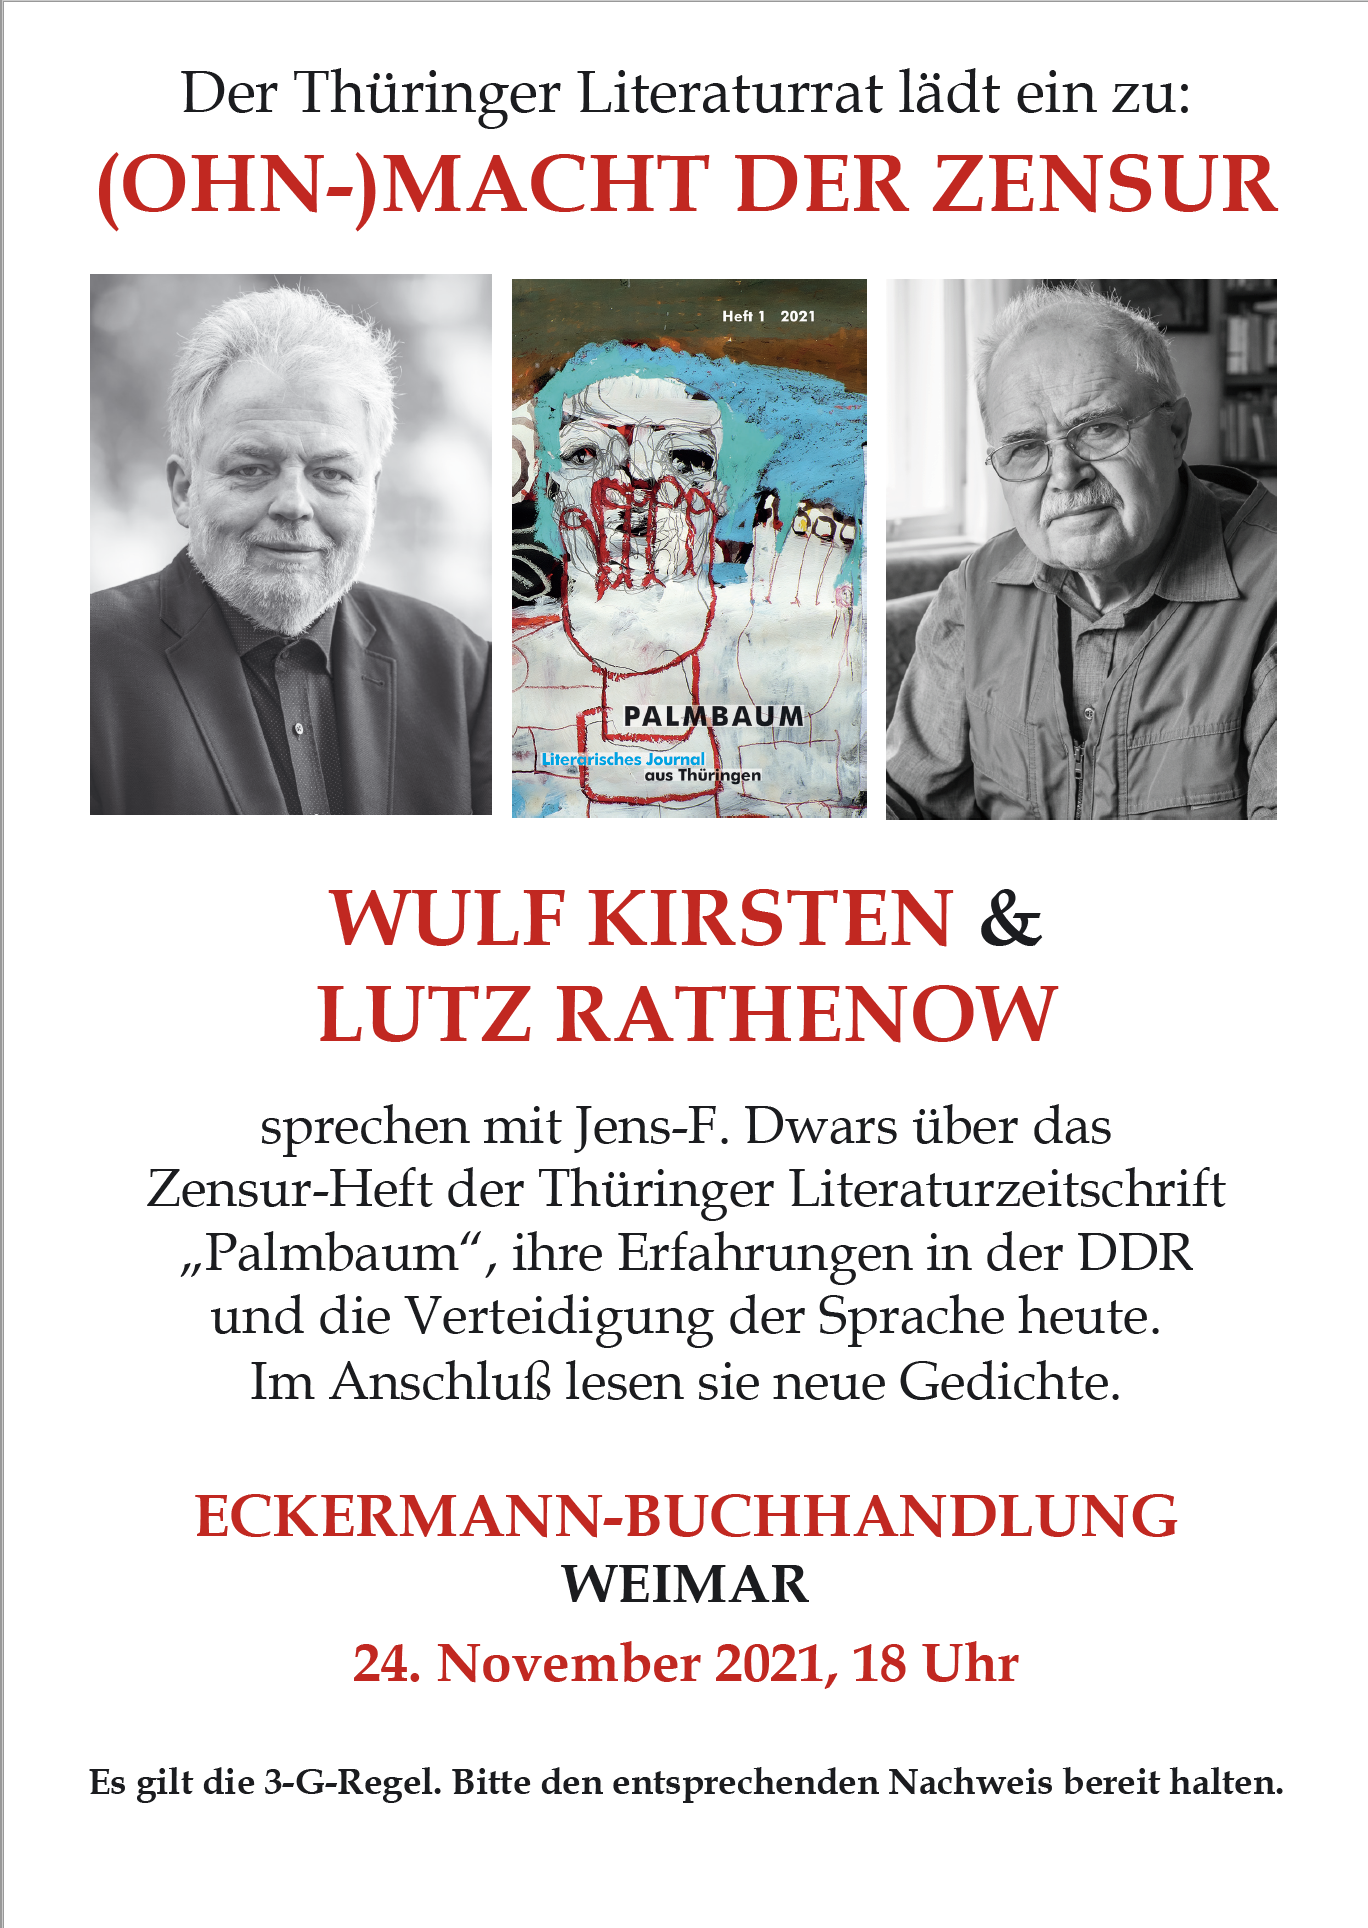 Palmbaum-Lesung und -Gespräch mit Wulf Kirsten und Lutz Rathenow in der Eckermann-Buchhandlung Weimar @ Eckermann-Buchhandlung